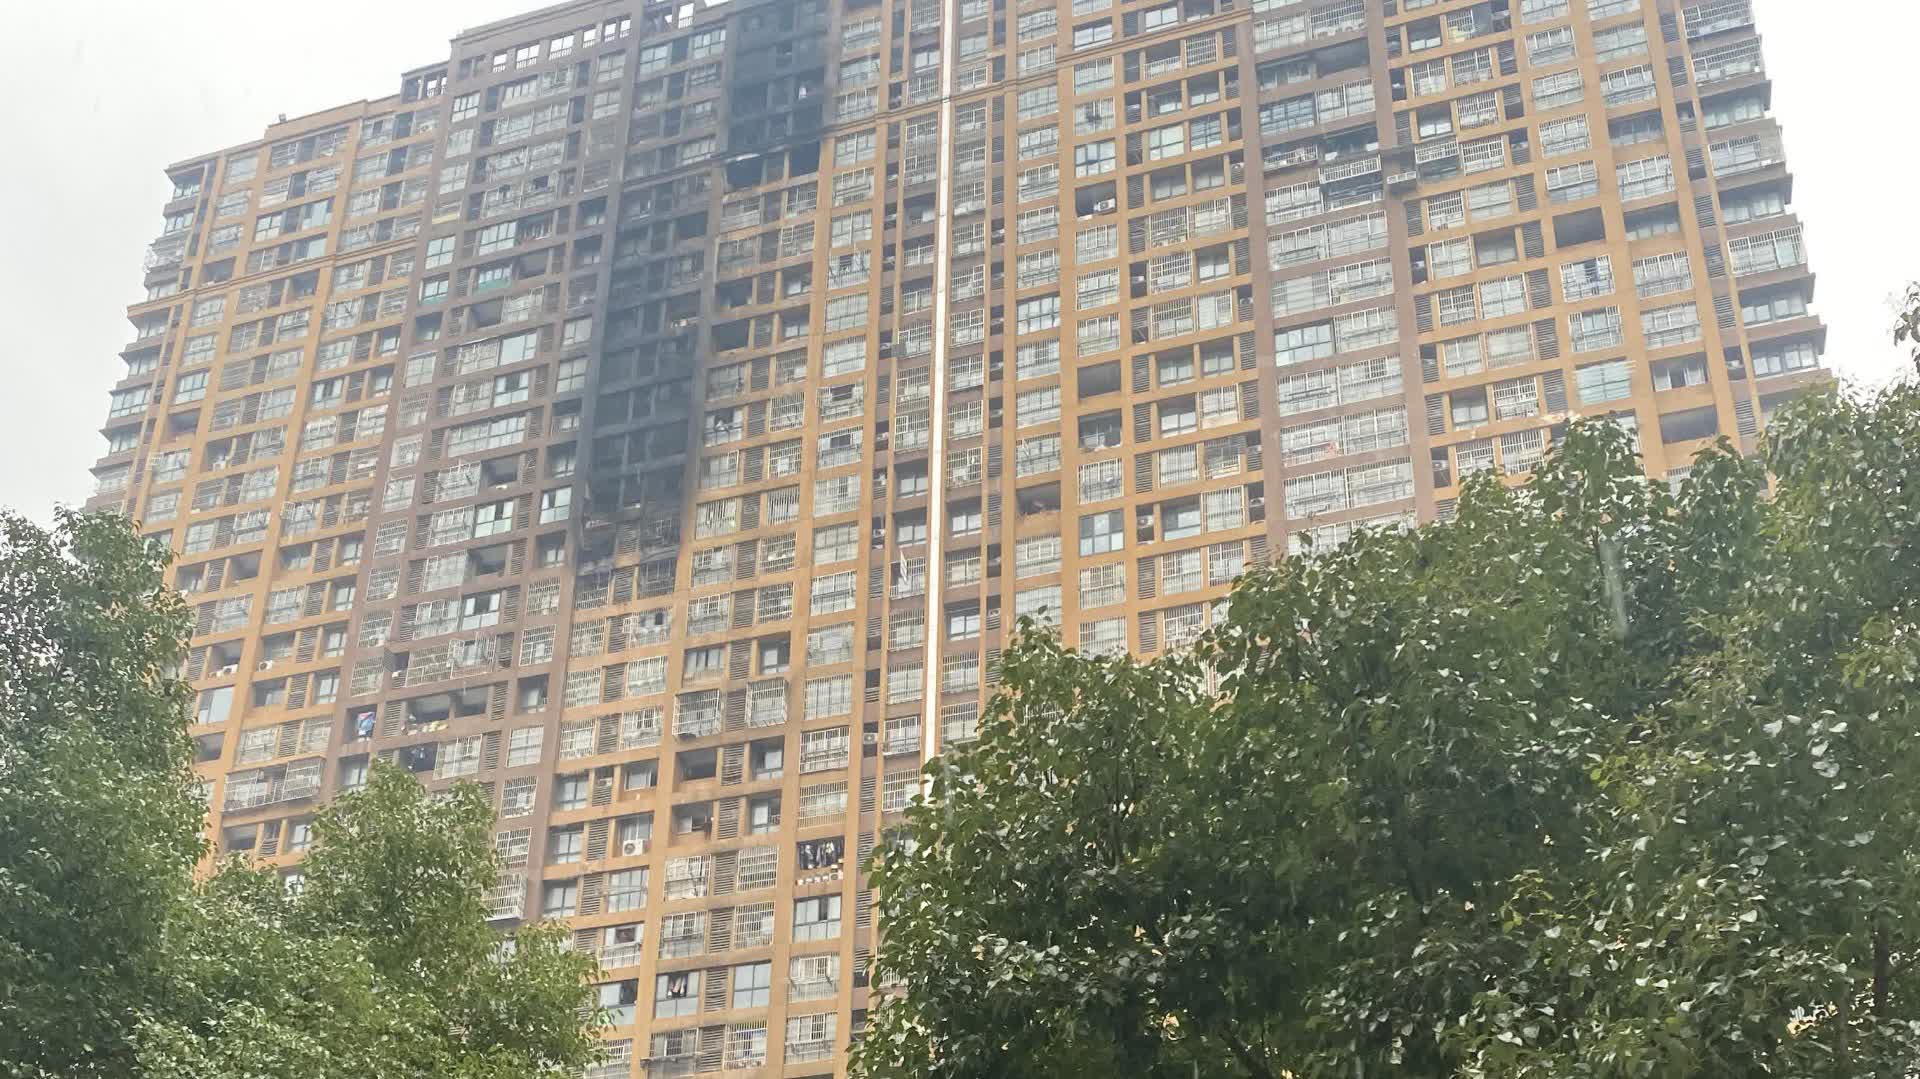 （有片）記者直擊南京居民樓火災現場